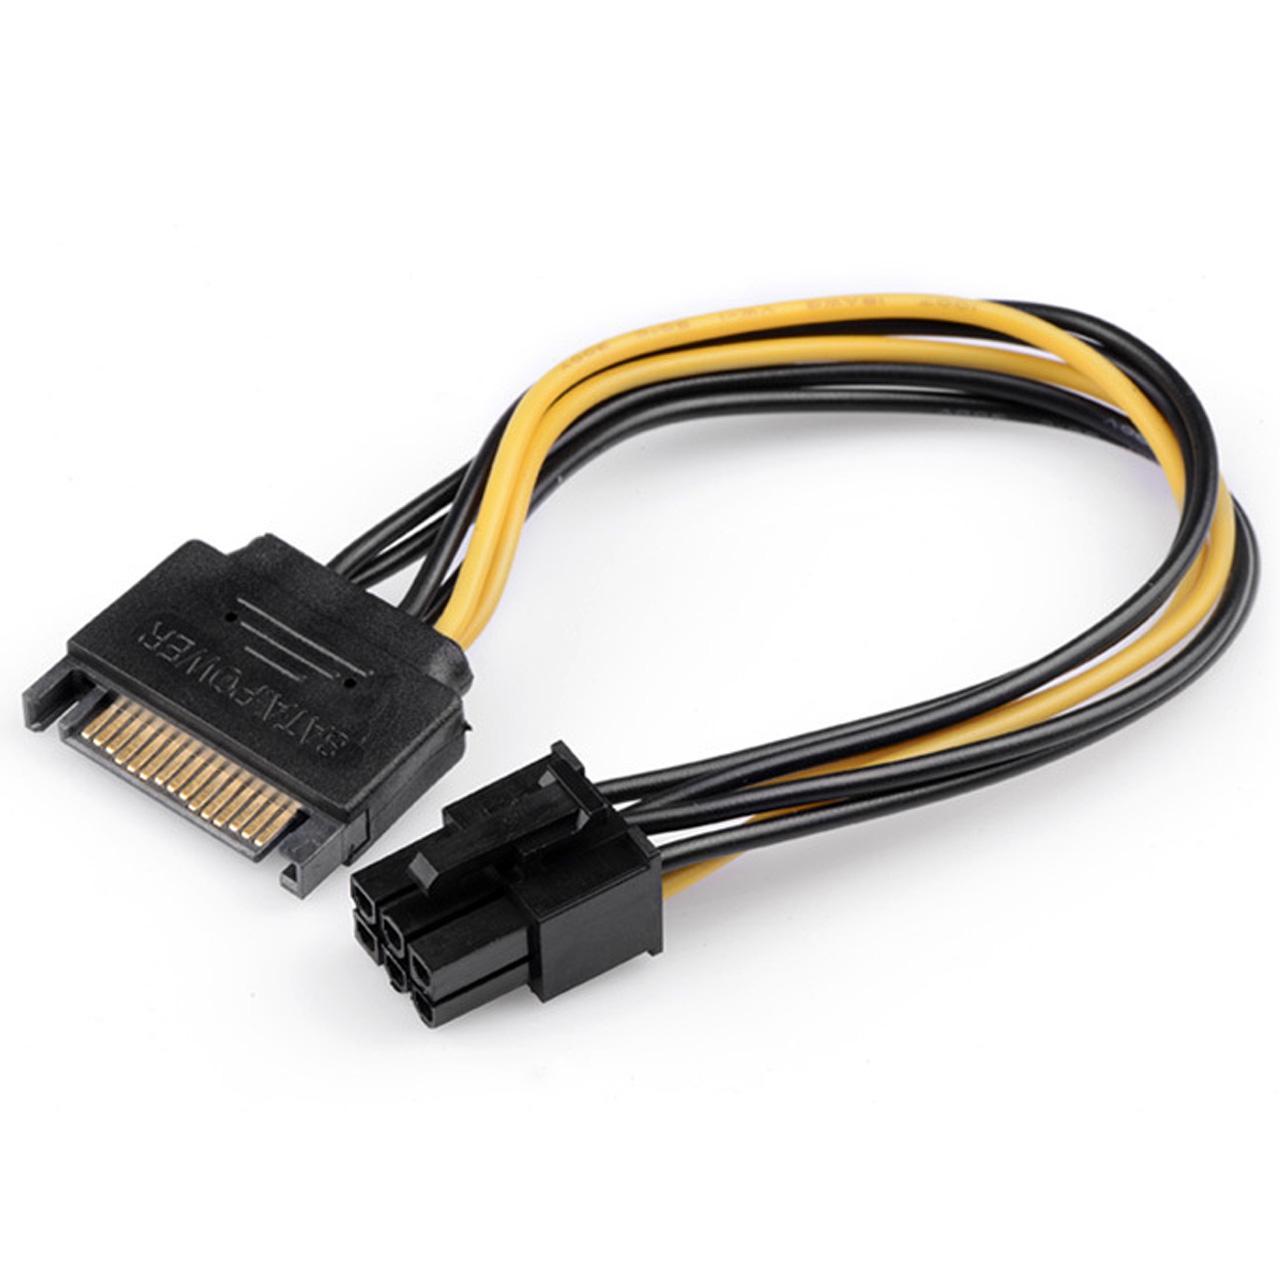 تبدیل برق ساتا به 6 پین گرافیک 

Cable PCI Express SATA to 6 pin